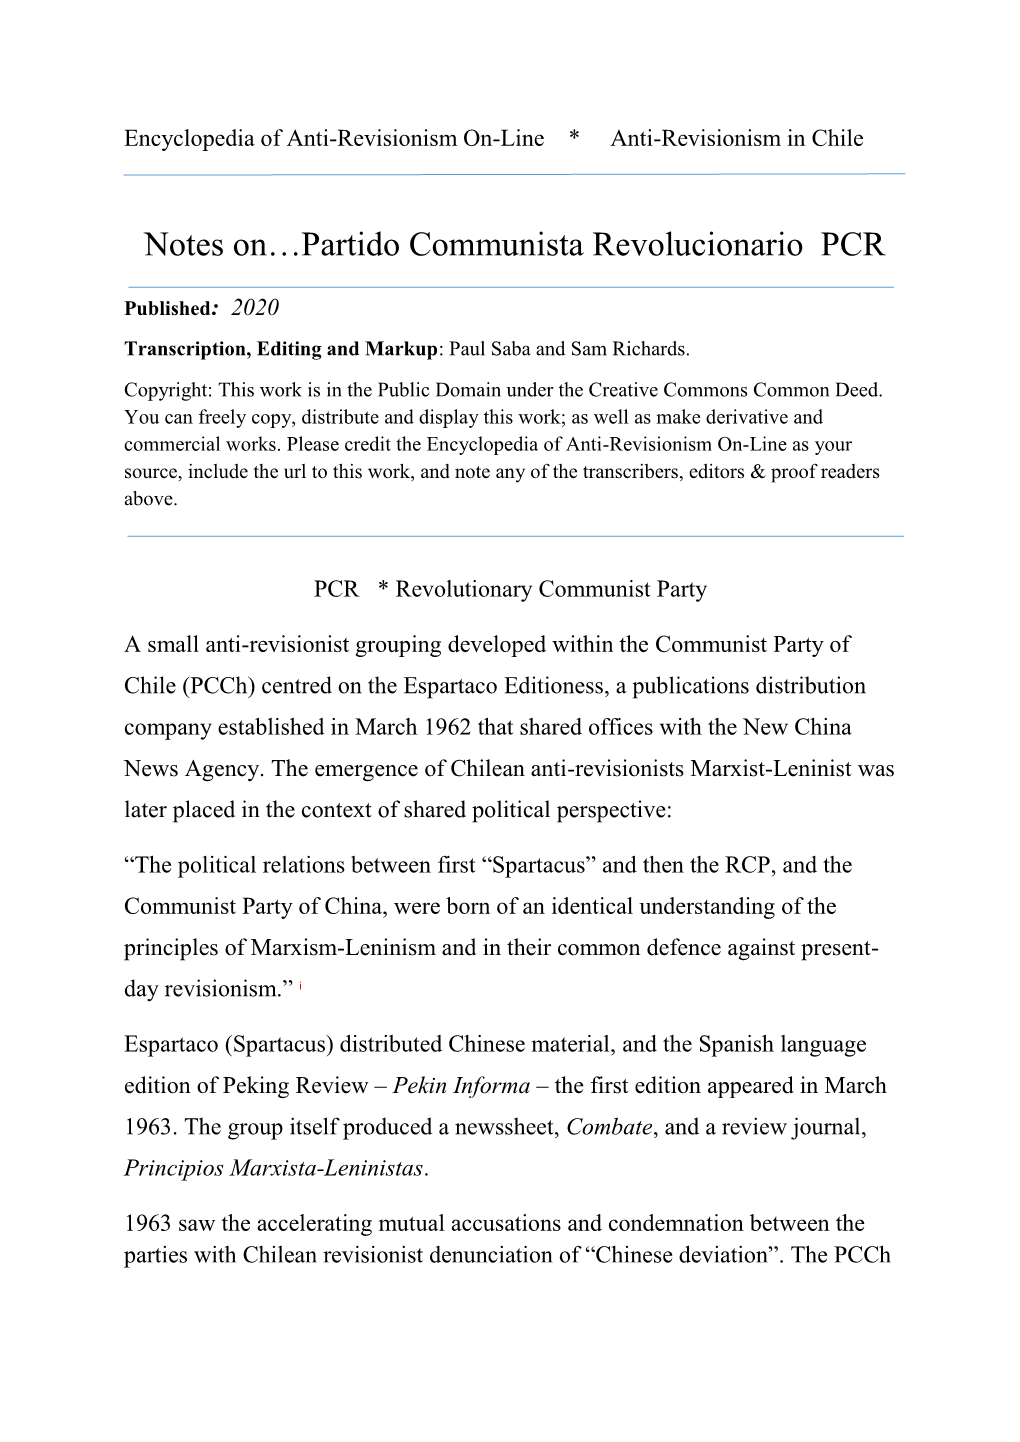 Notes on the Partido Comunista Revolucionario (PCR)